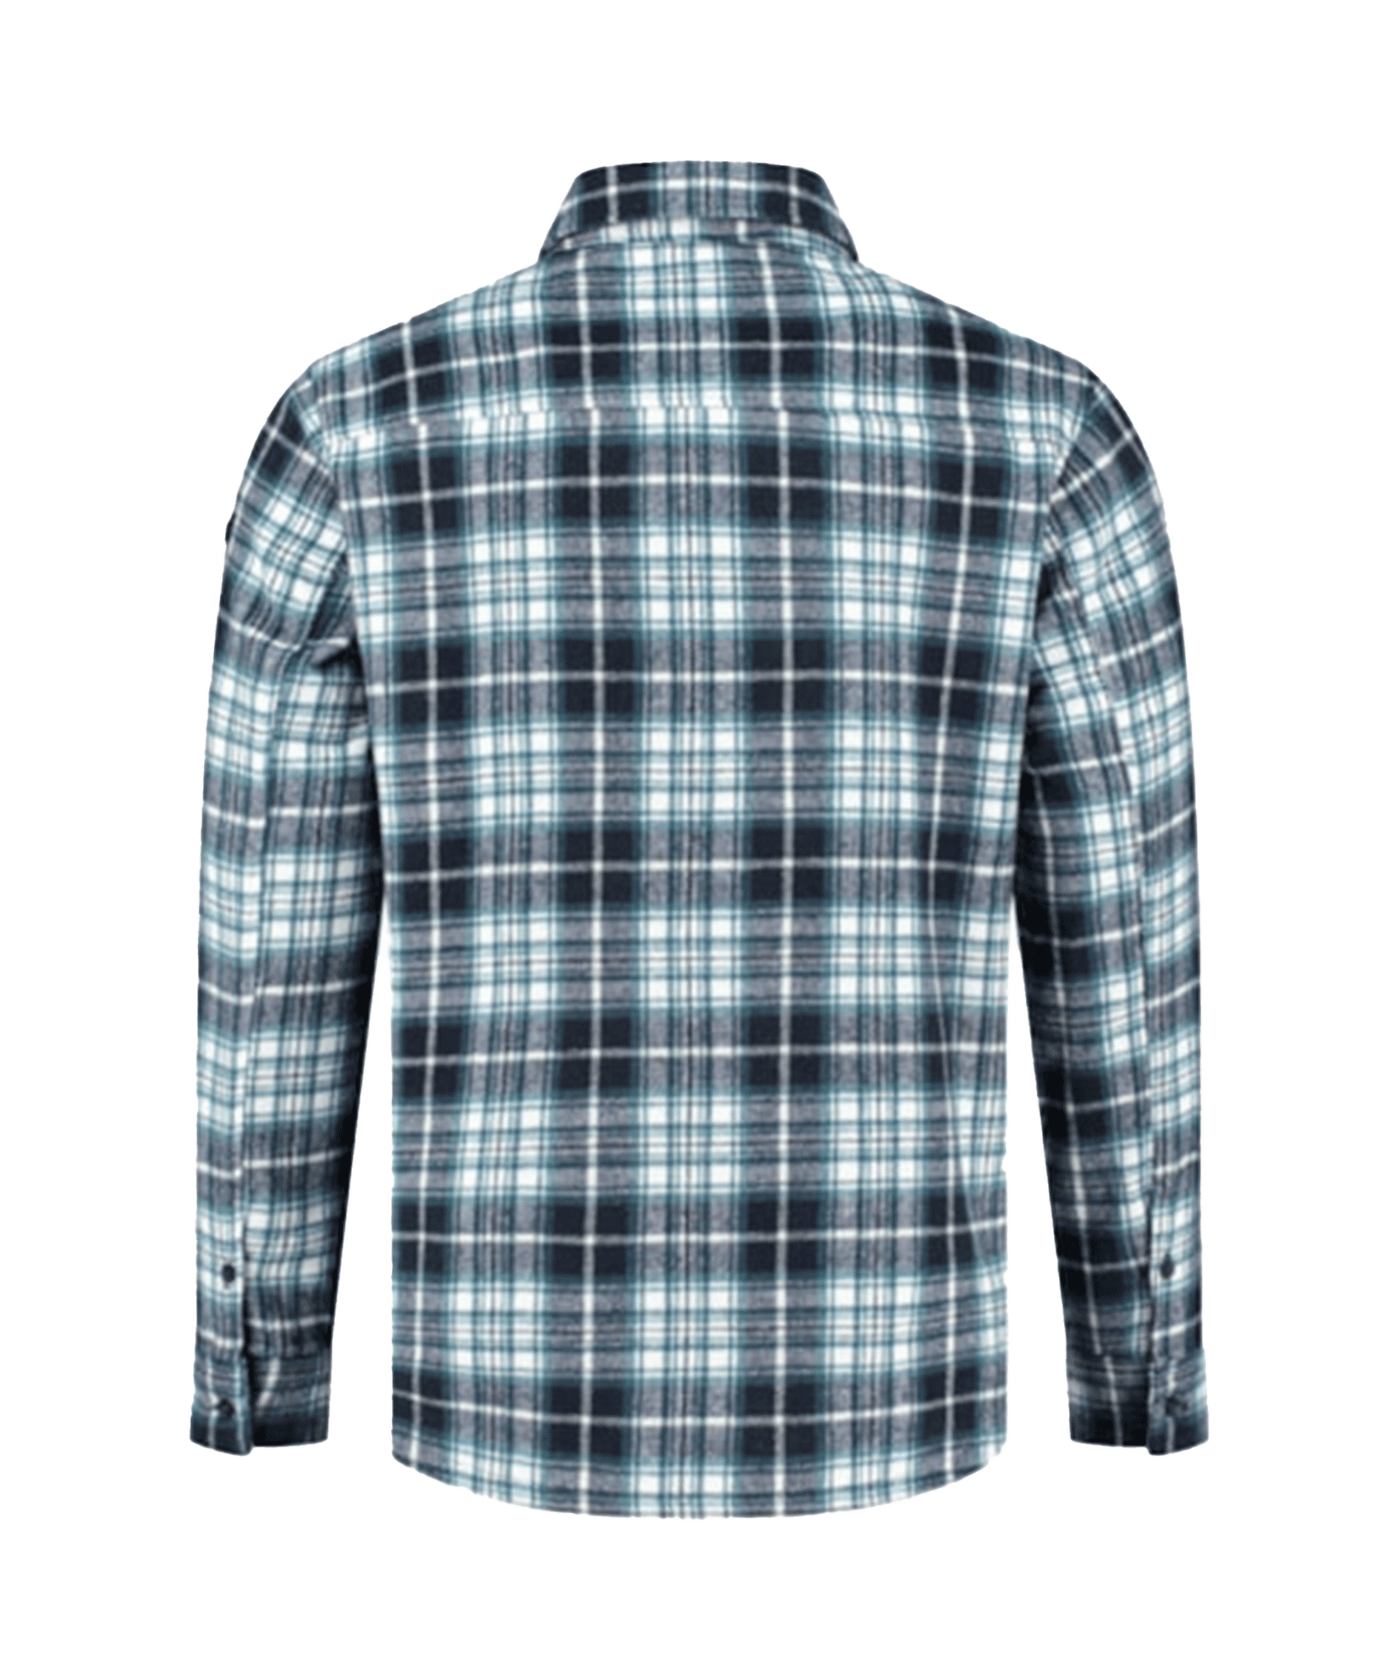 PureWhite - 23030207 - Wool Look Check Overshirt - Navy